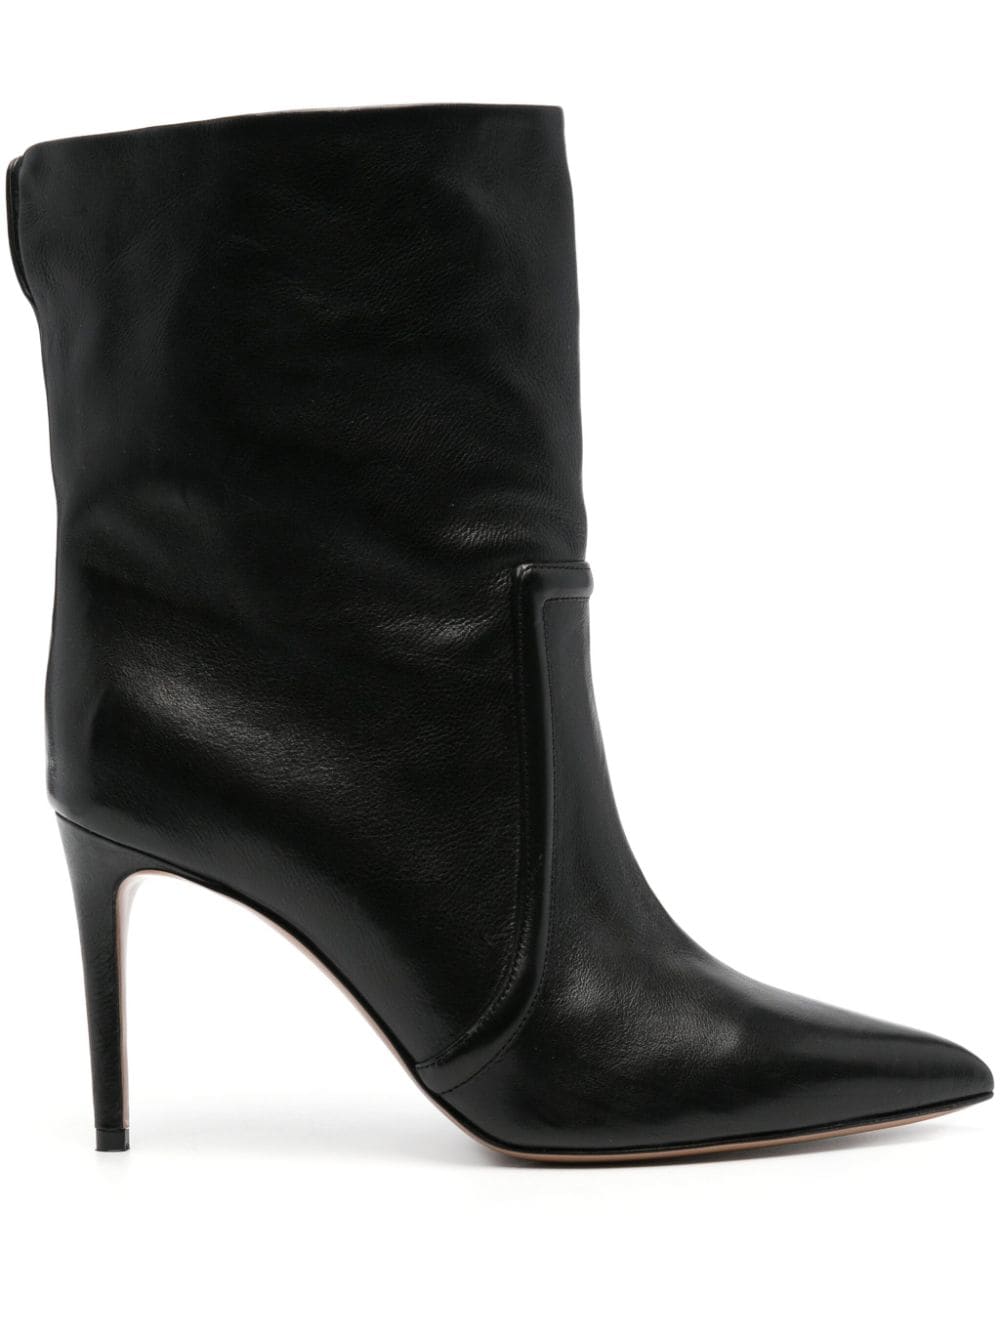 Paris Texas Stilleto 85mm leather ankle boots - Black von Paris Texas